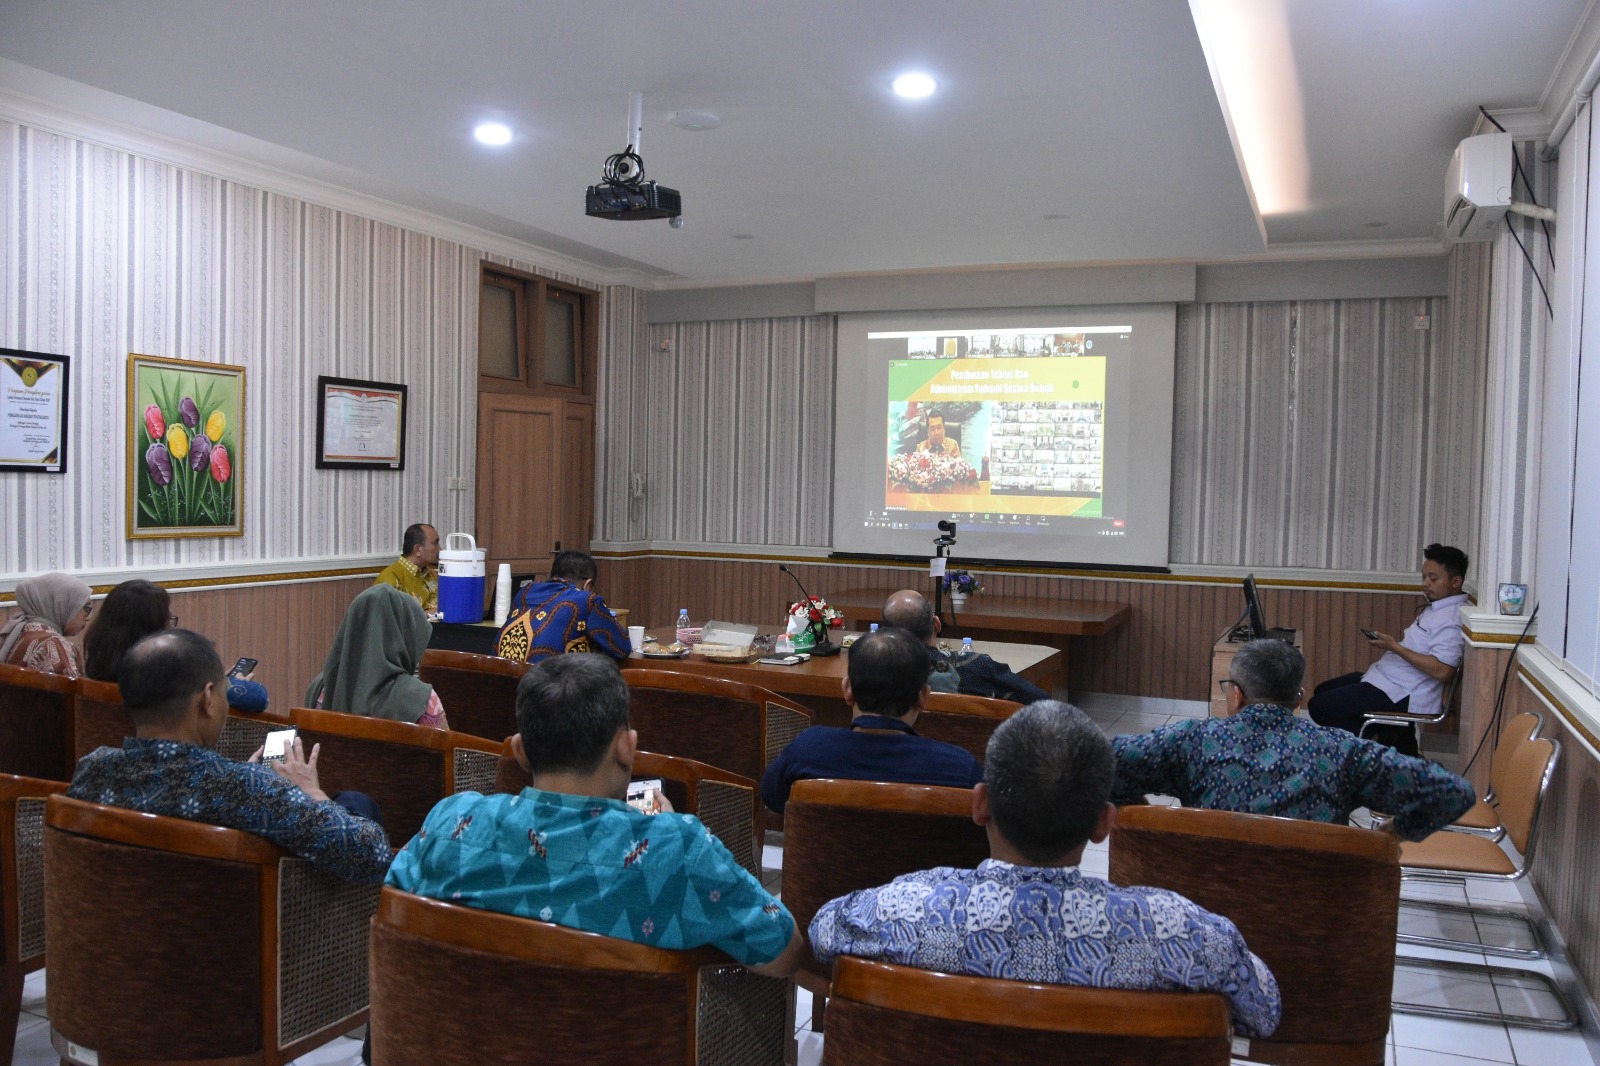 Pengadilan Negeri Yogyakarta Mengikuti Pembinaan Teknis dan Administrasi Peradilan